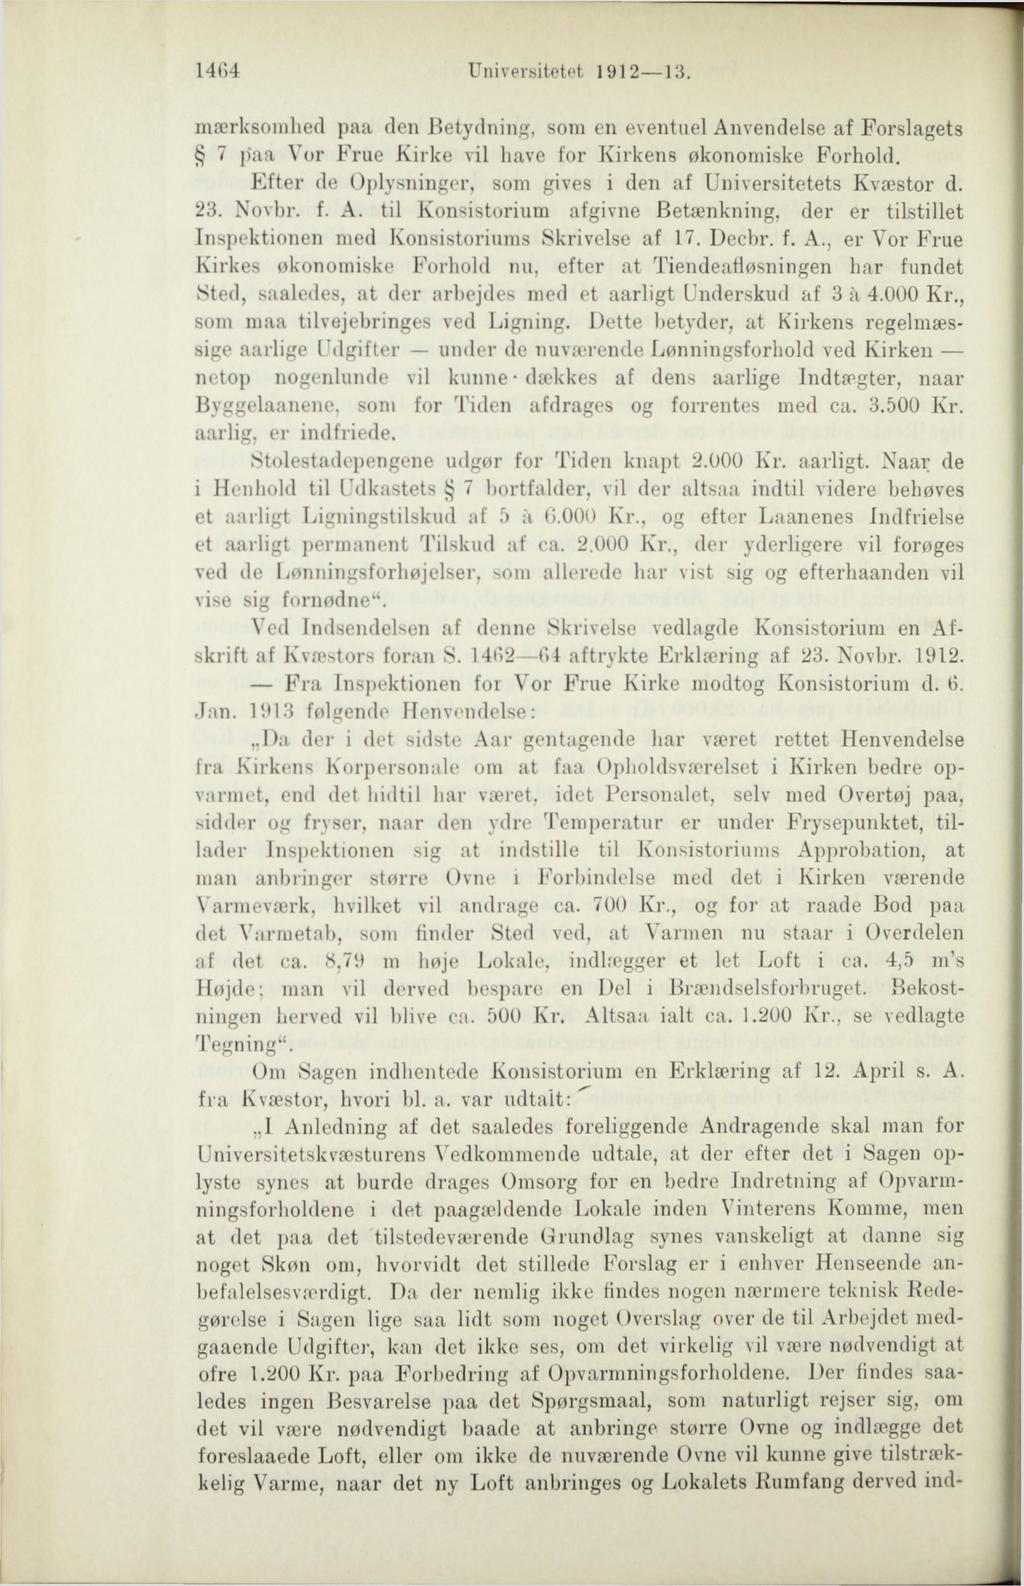 1404 Universitetet 1912 13. mærksorahed paa den Betydning, som en eventuel Anvendelse af Forslagets 7 paa Vor Frue Kirke vil have for Kirkens økonomiske Forhold.